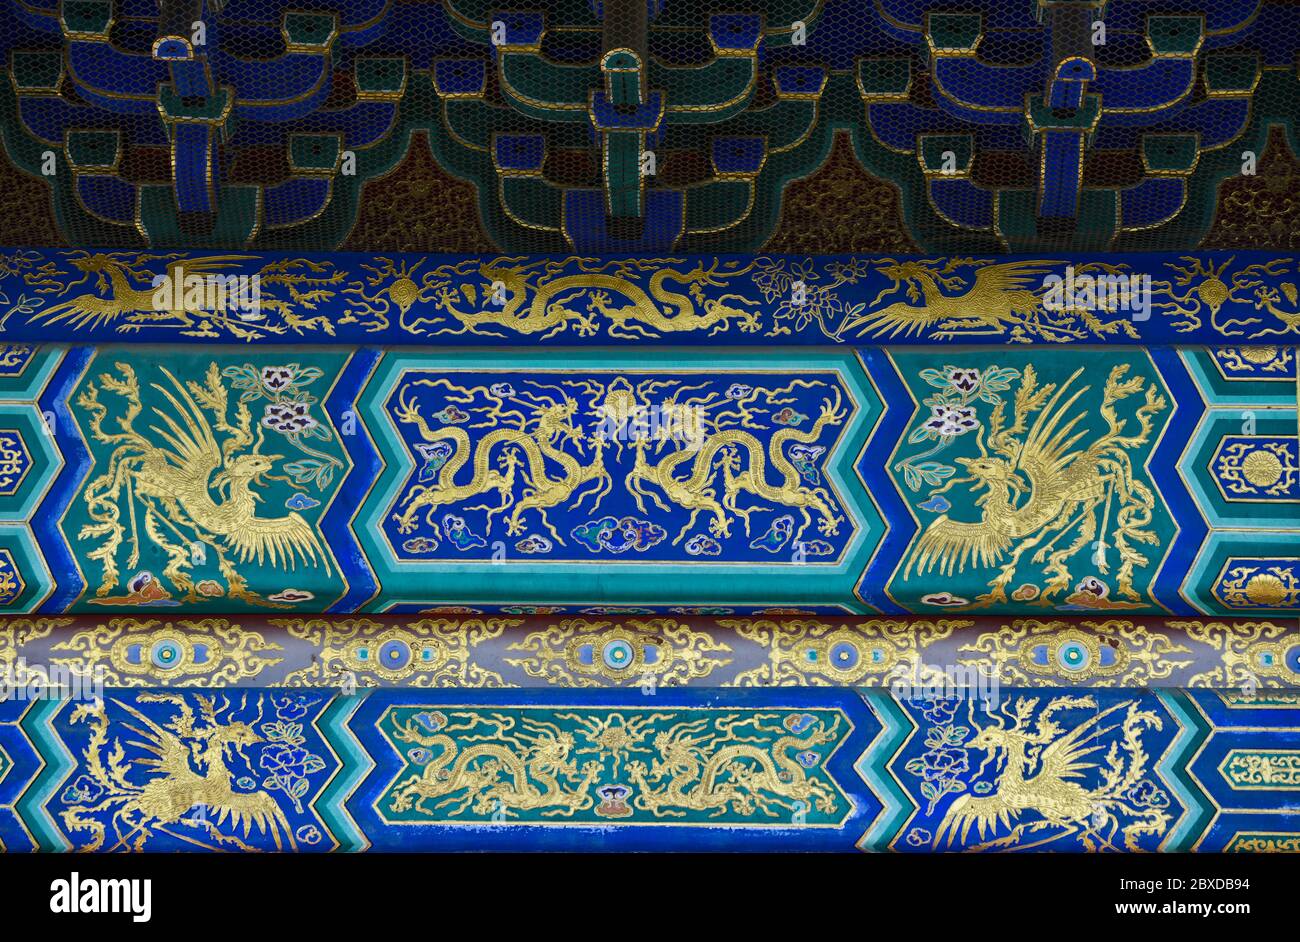 Himmelstempel: Details der Dekoration der Haupthalle, mit Drachen-Motiven Design. Peking, China Stockfoto